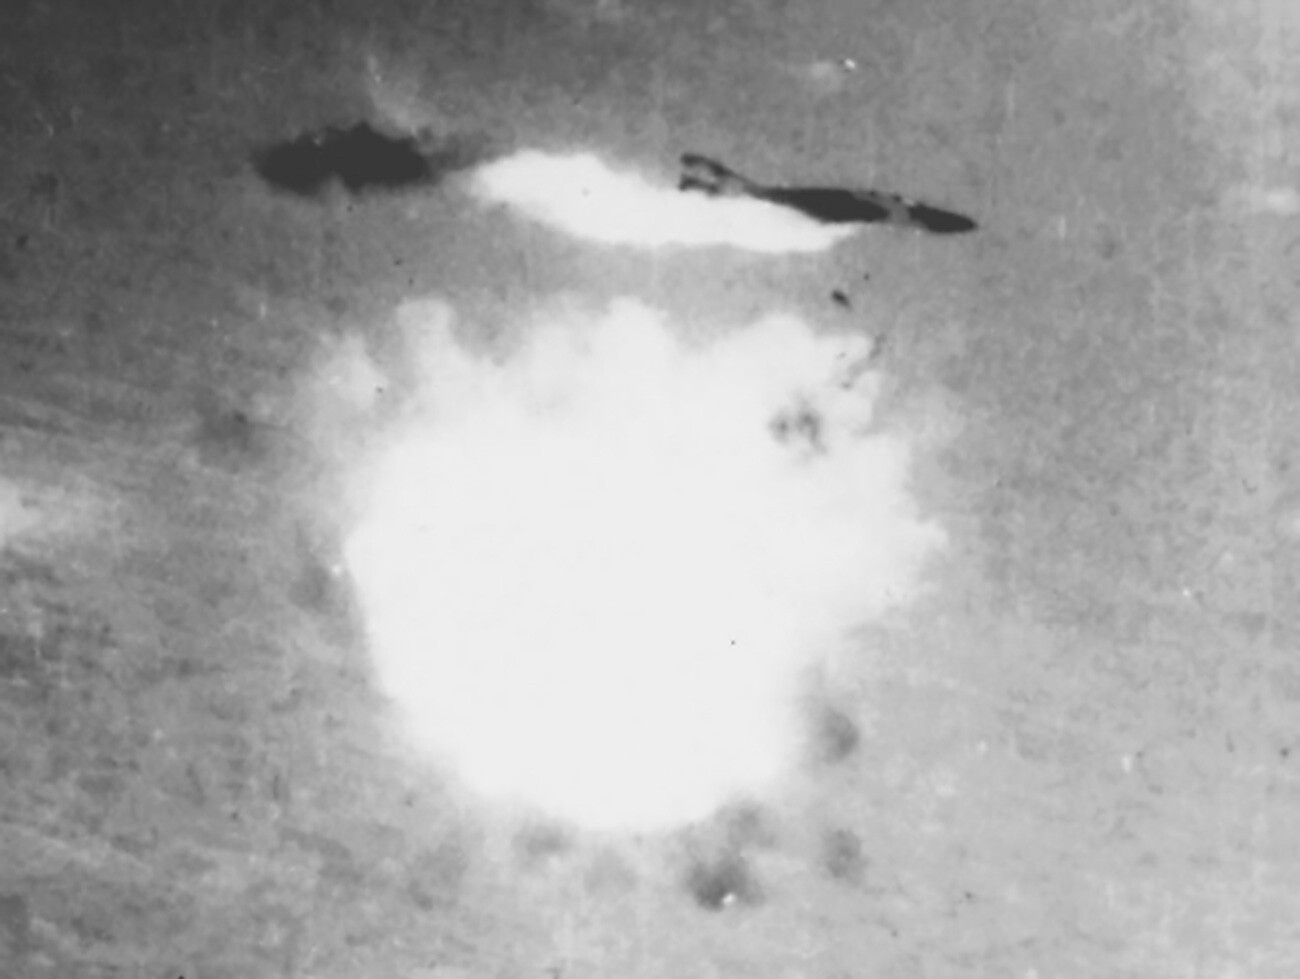 Momento em que um F-4 americano foi atingido por um míssil de defesa aérea S-75 sobre o Vietnã. Detonação sem contato de uma ogiva de míssil a partir do hemisfério inferior, explosão e incêndio dos depósitos de combustível. A tripulação foi capturada.